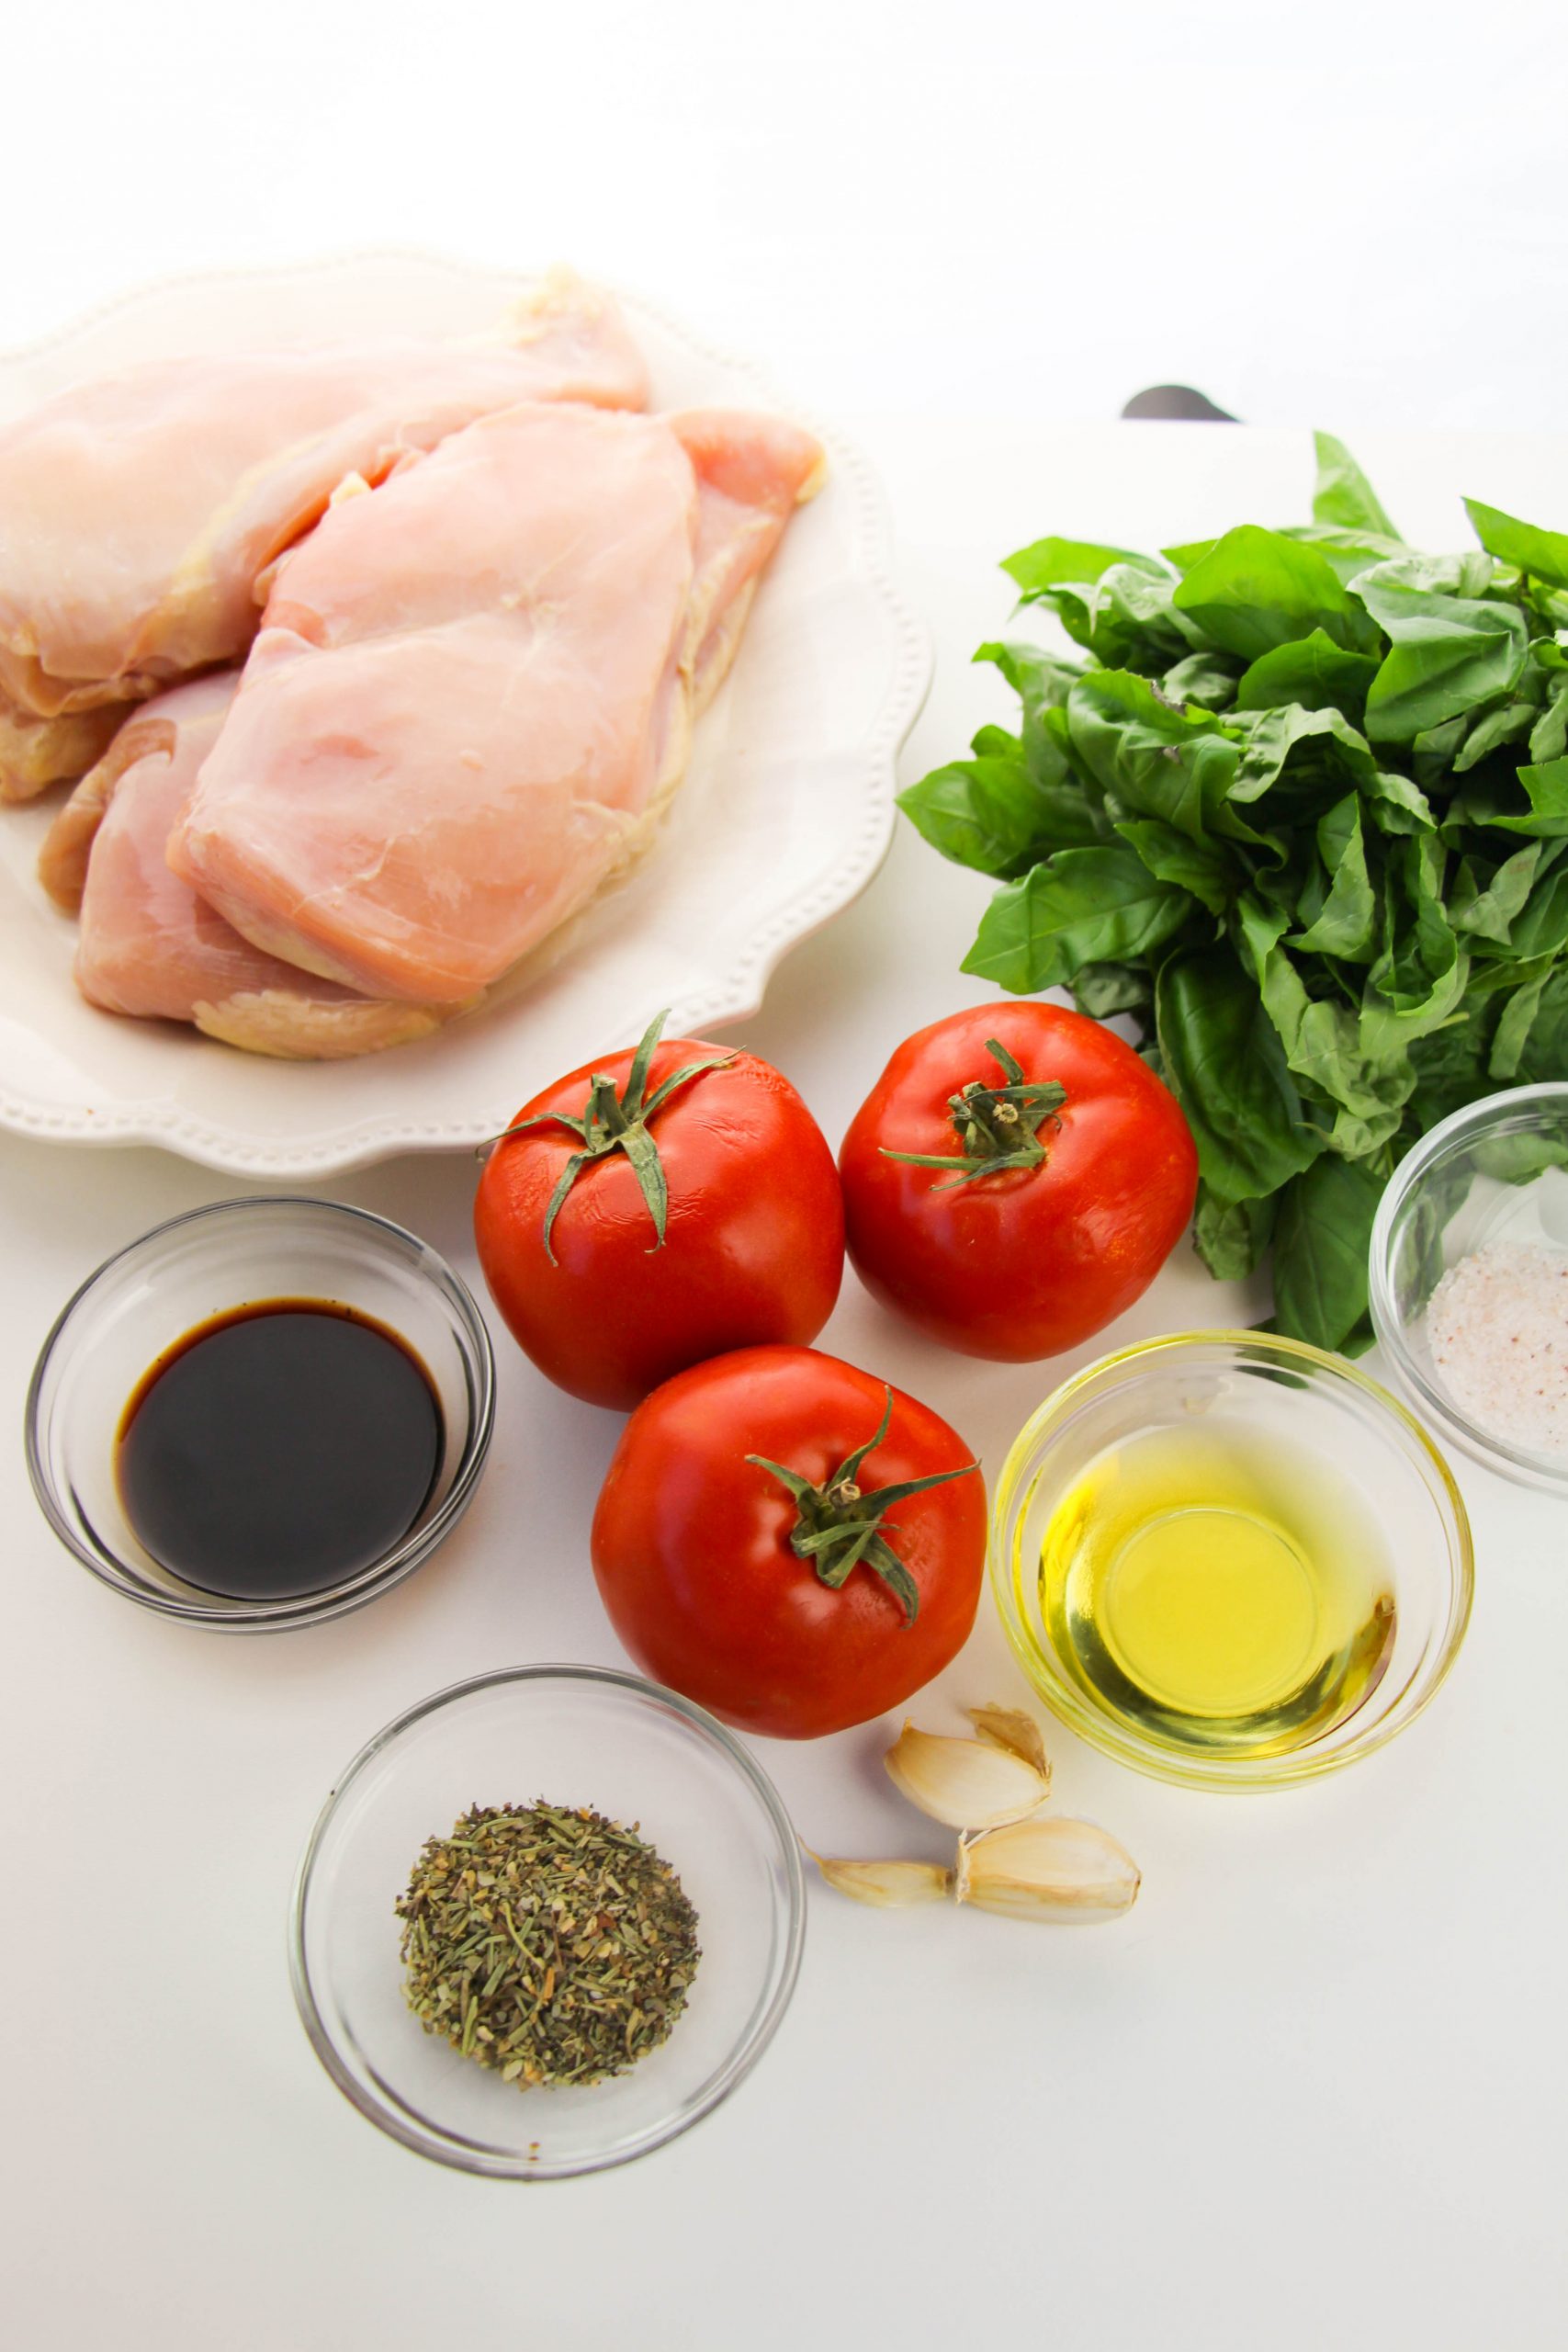 Bruschetta Chicken Ingredients